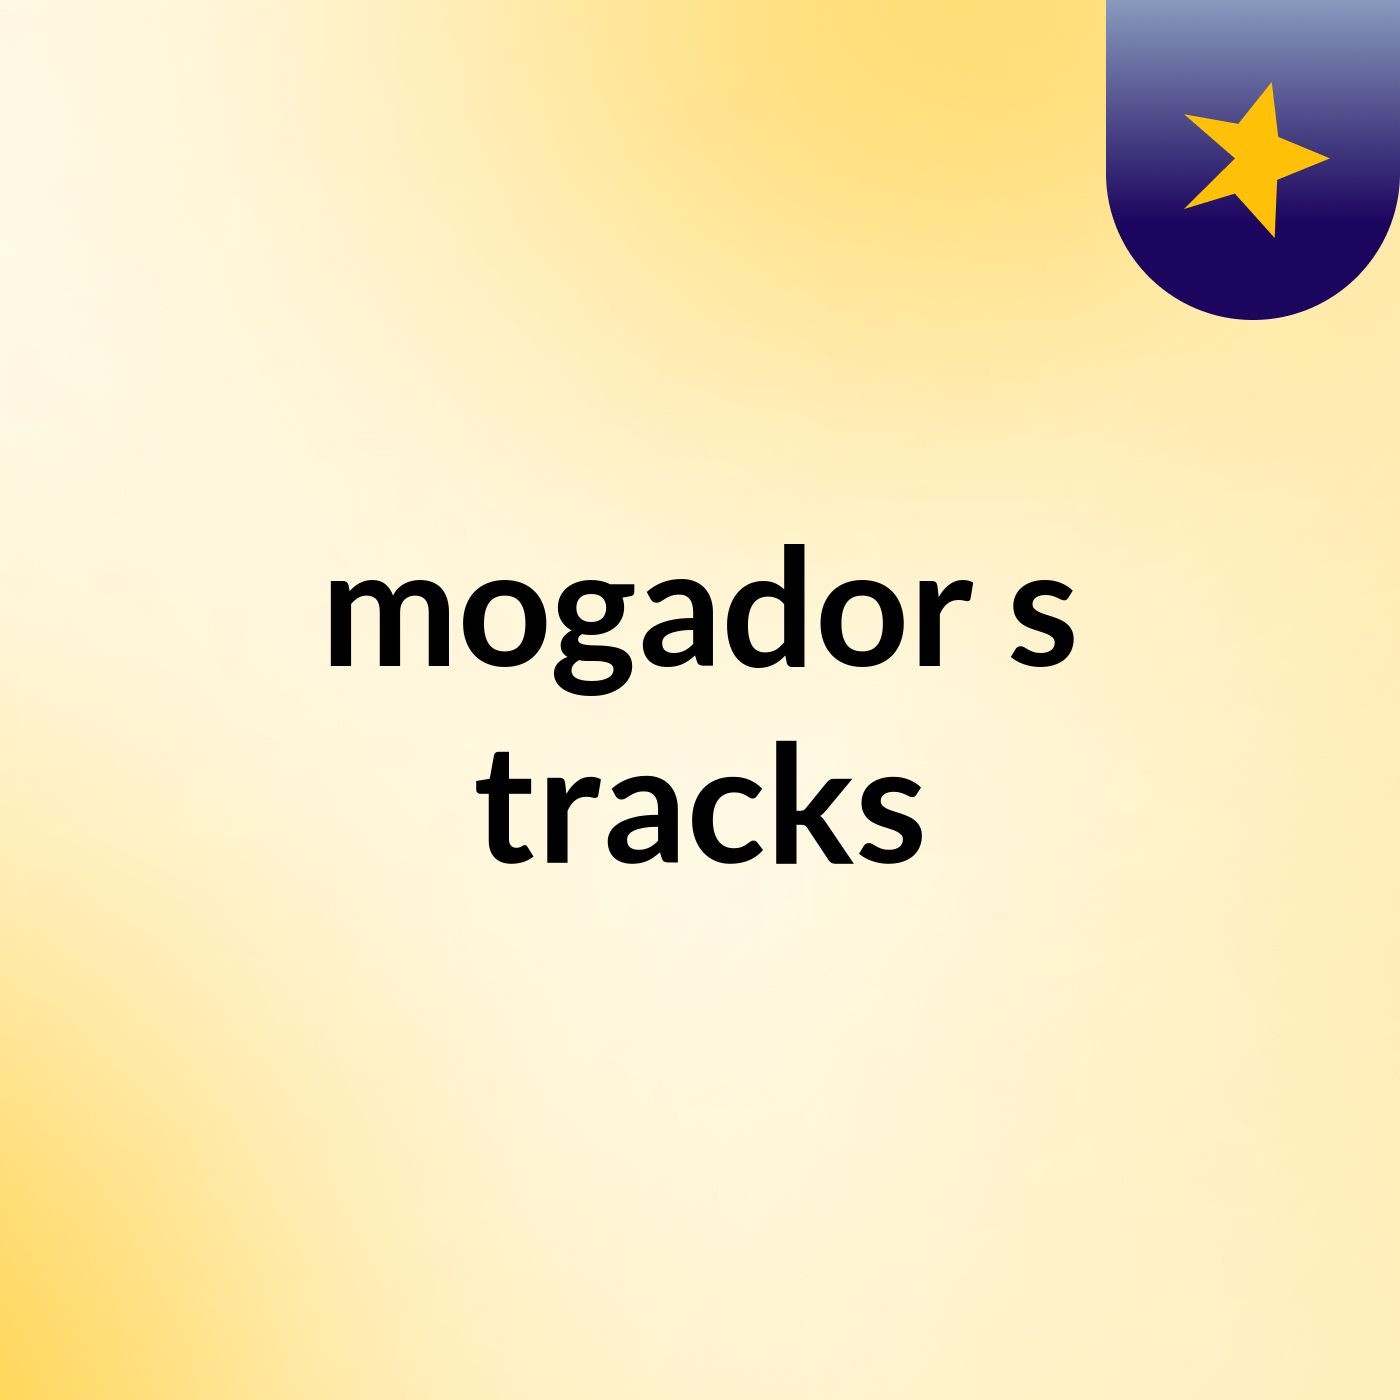 mogador's tracks